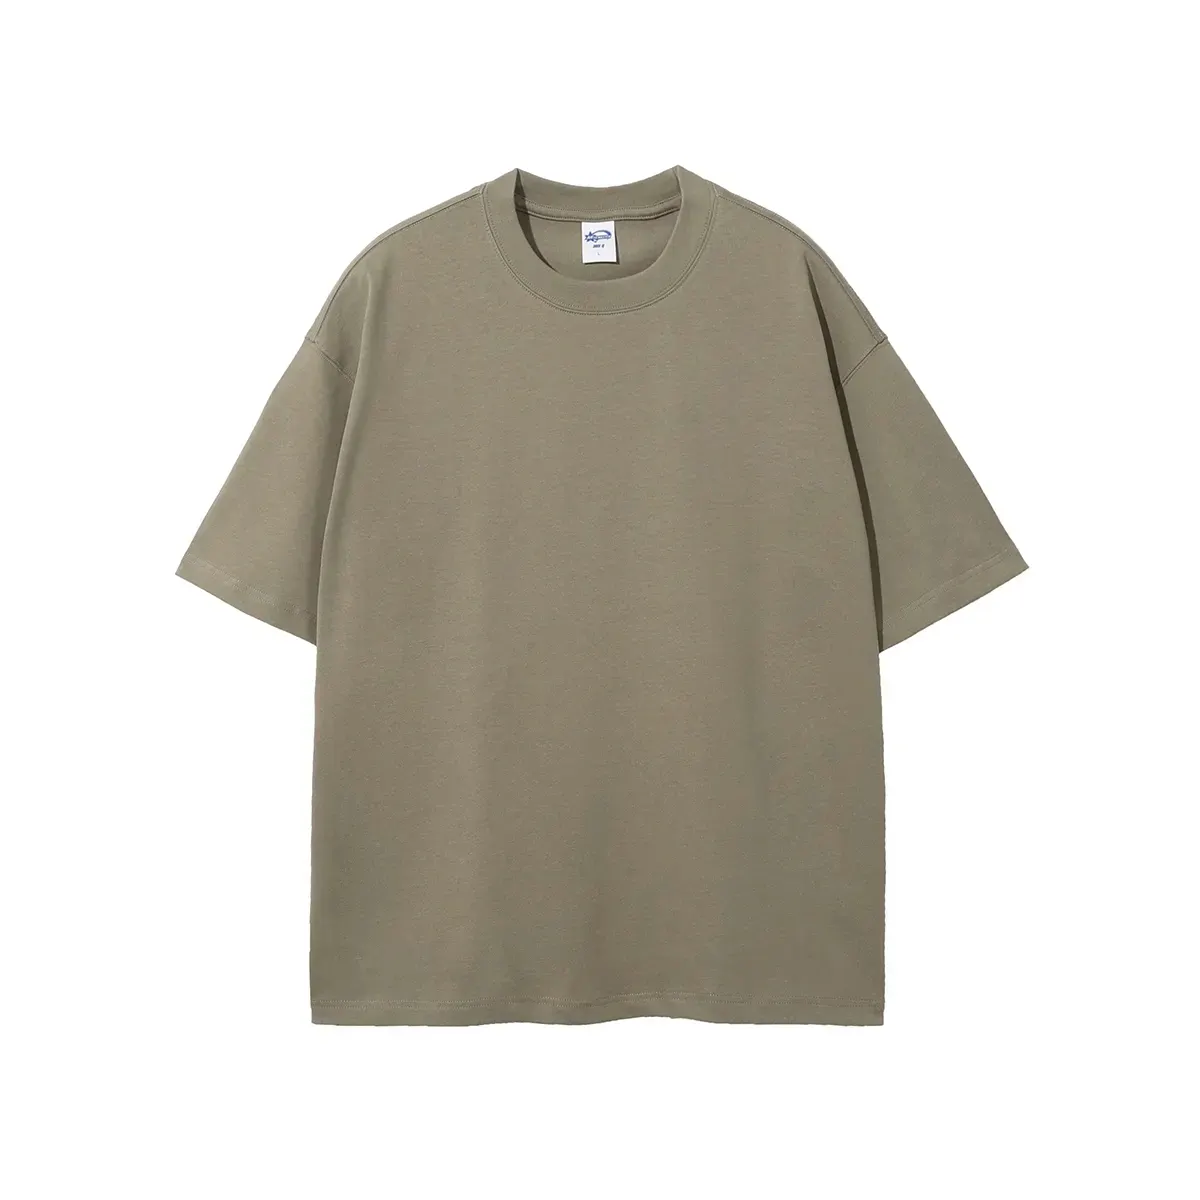 Hot Selling Summer Short Sleeve Tshirt Heavyweight Unisex T Shirt Blank Tshirts Men Basic Plain Customise 100% Cotton White